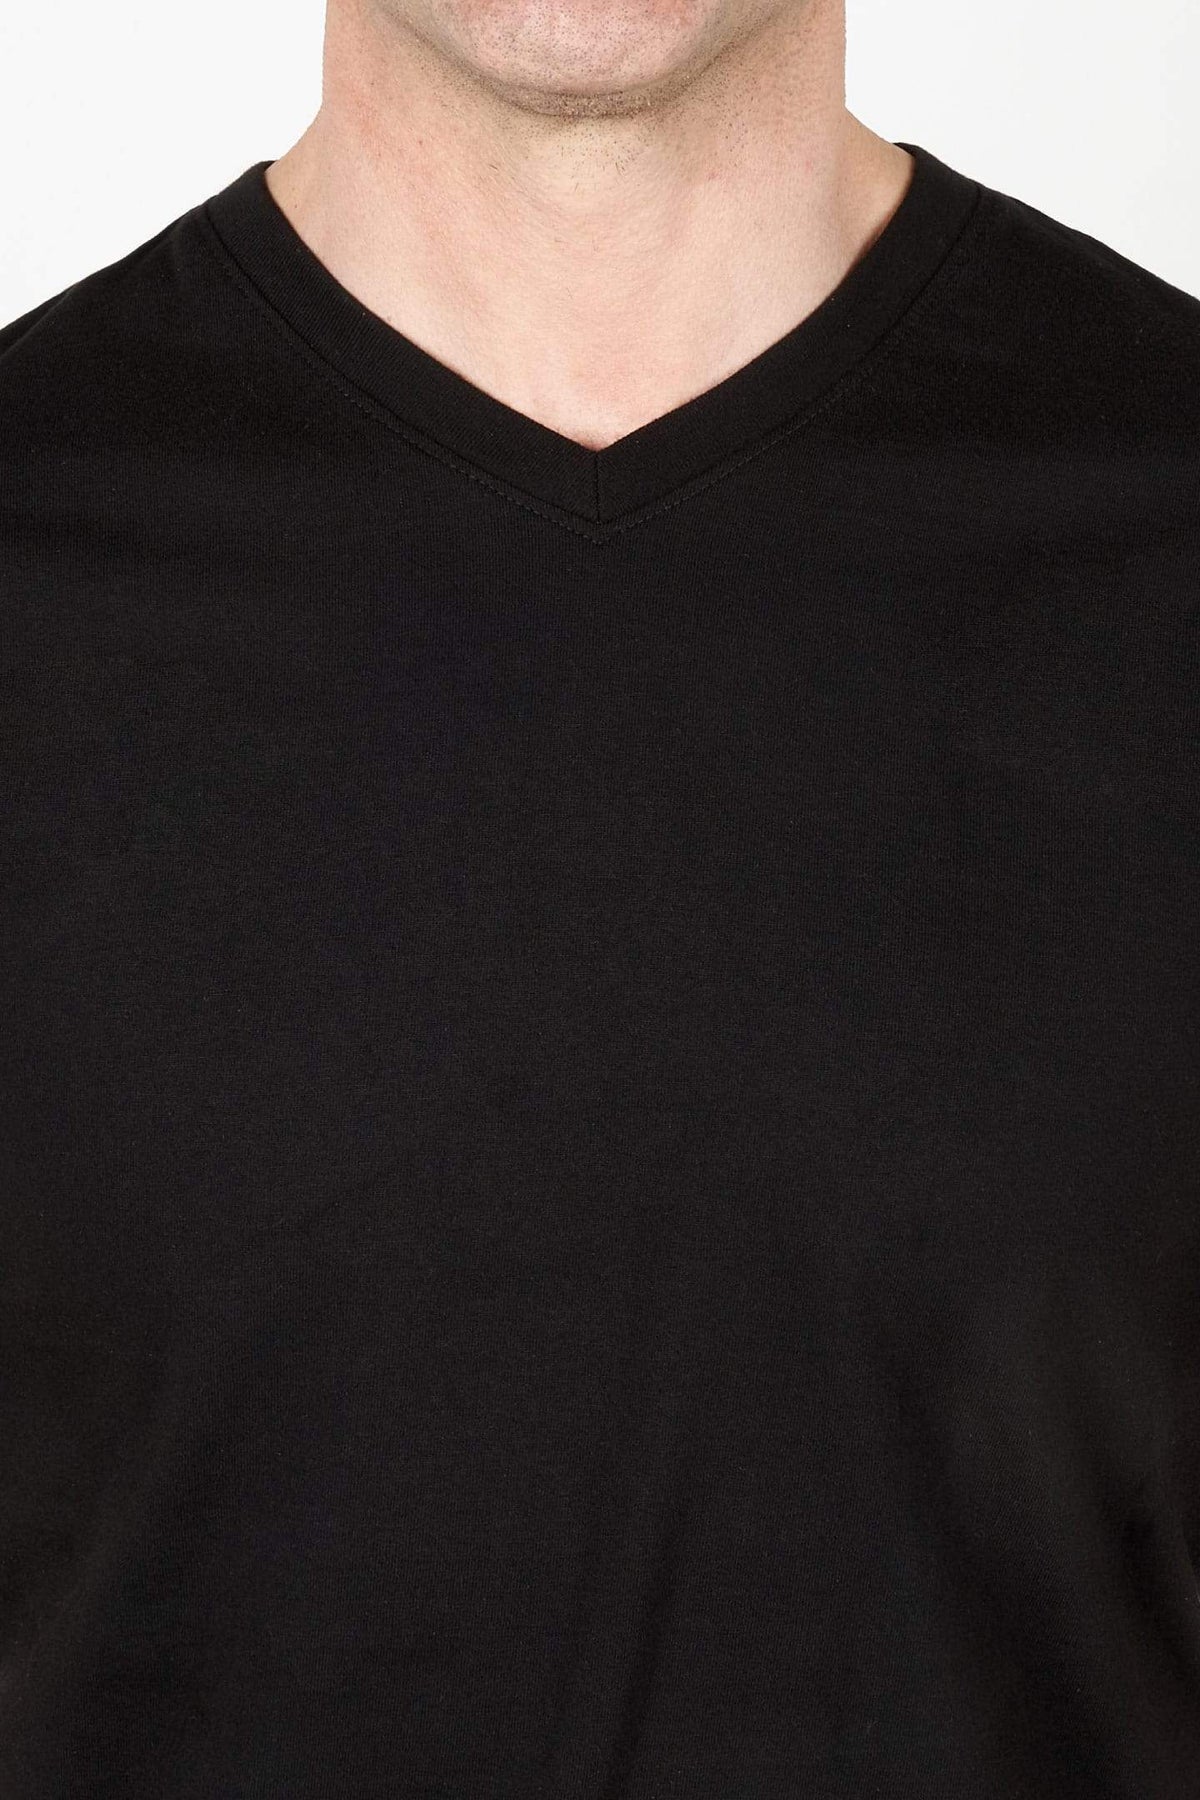 Buy Jet Black V-Neck T-Shirt for Short Men | Ash & Erie